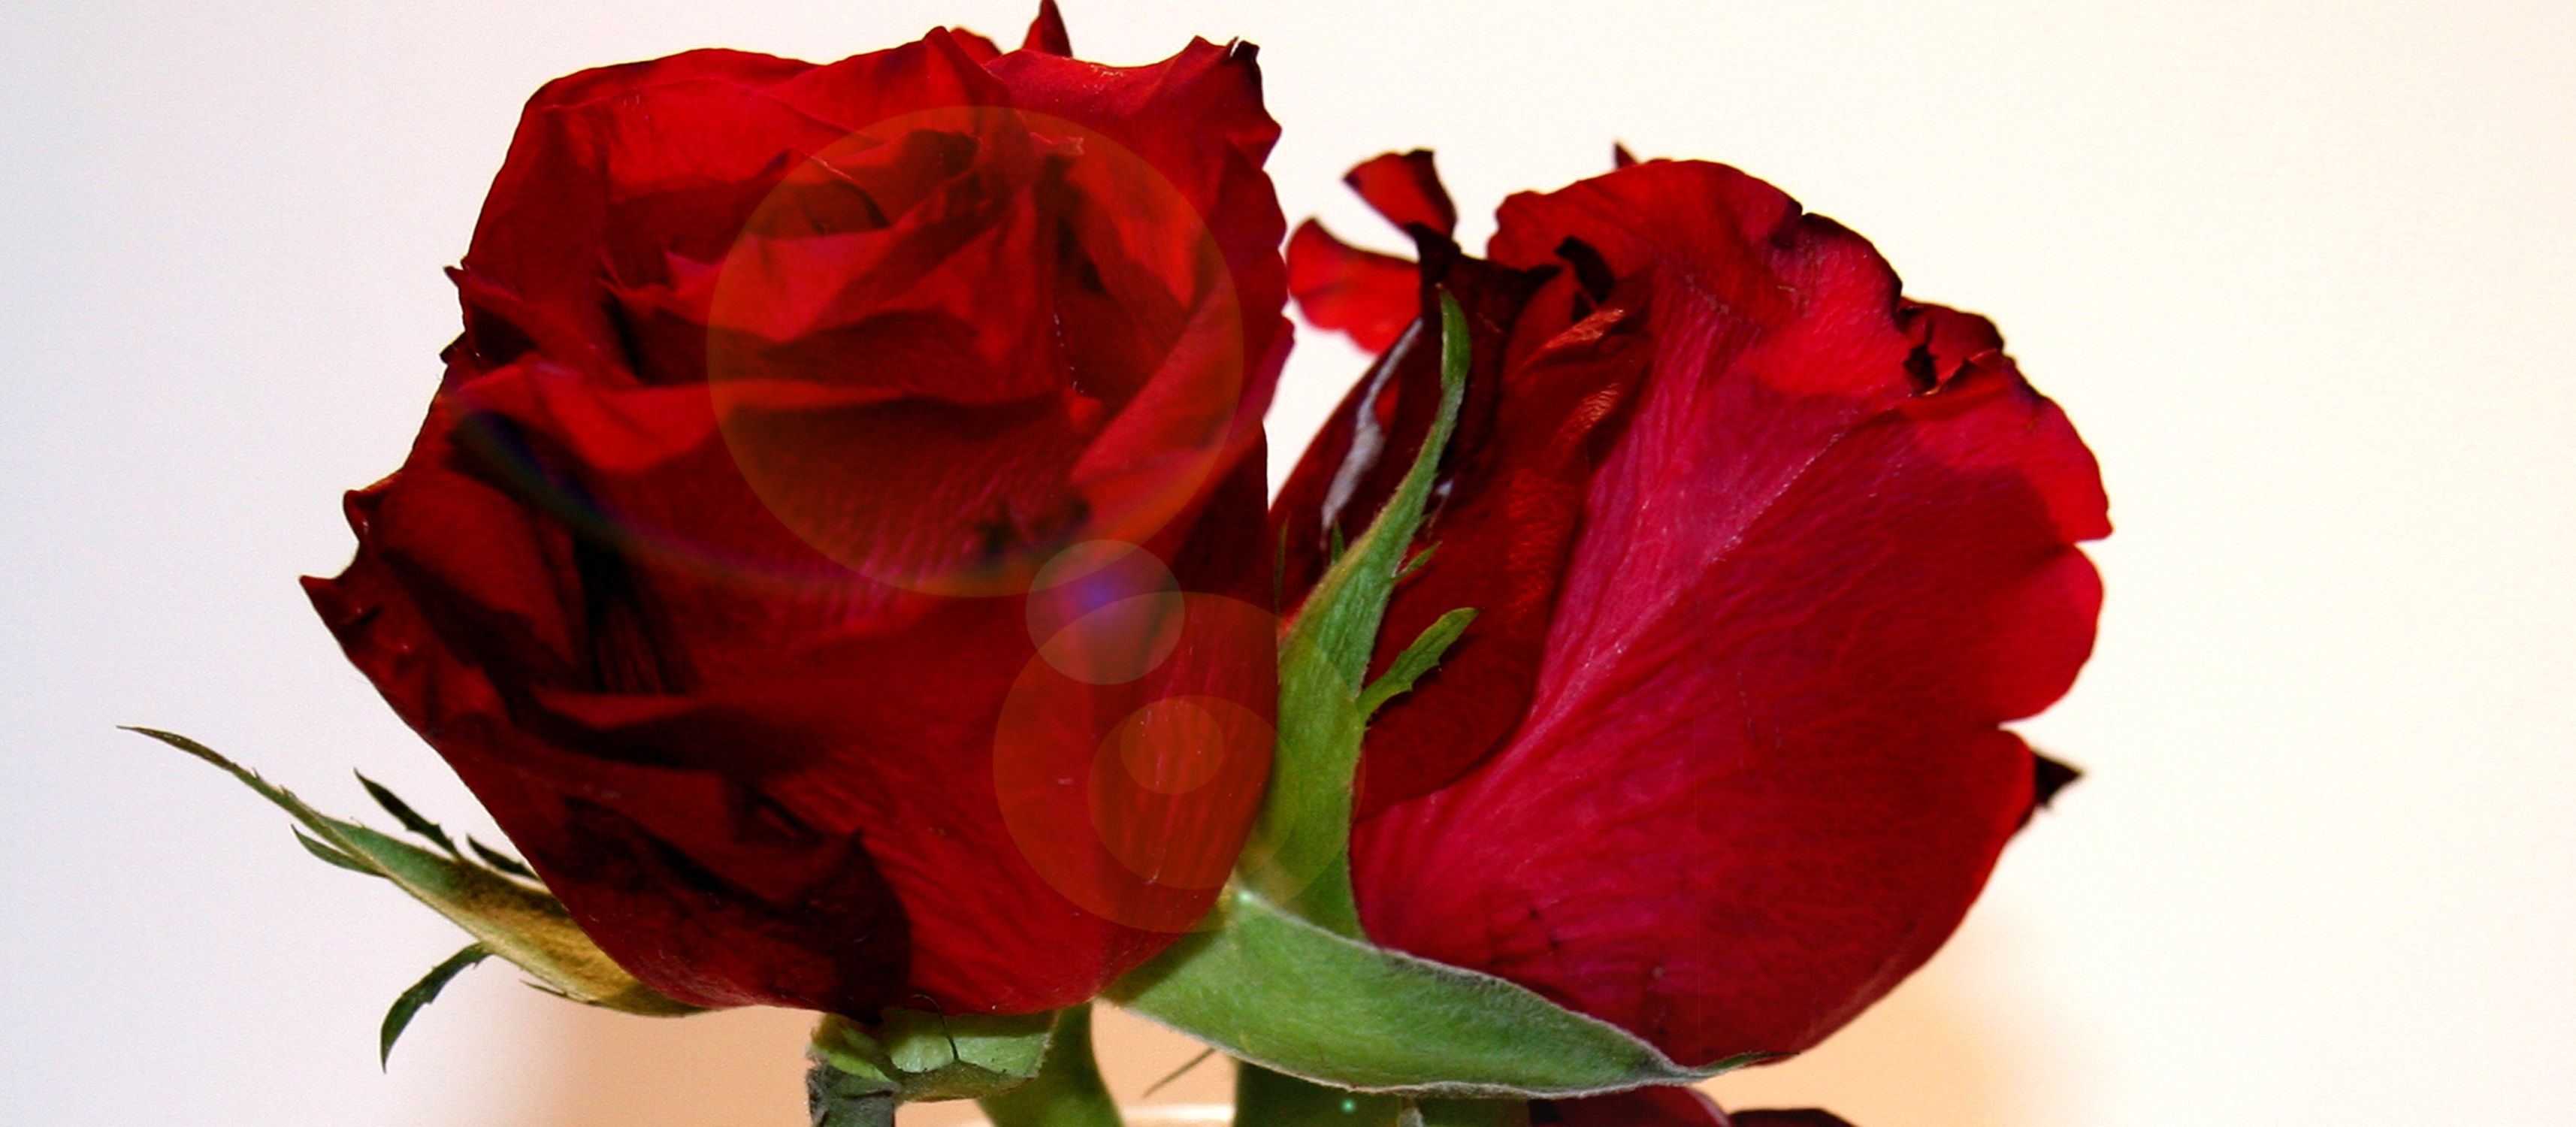 Bild mit Natur, Pflanzen, Blumen, Blumen, Rosen, Blume, Pflanze, Rose, Roses, rote Rose, Rosenblüte, Flower, Flowers, osaceae, zwei rote Rosen